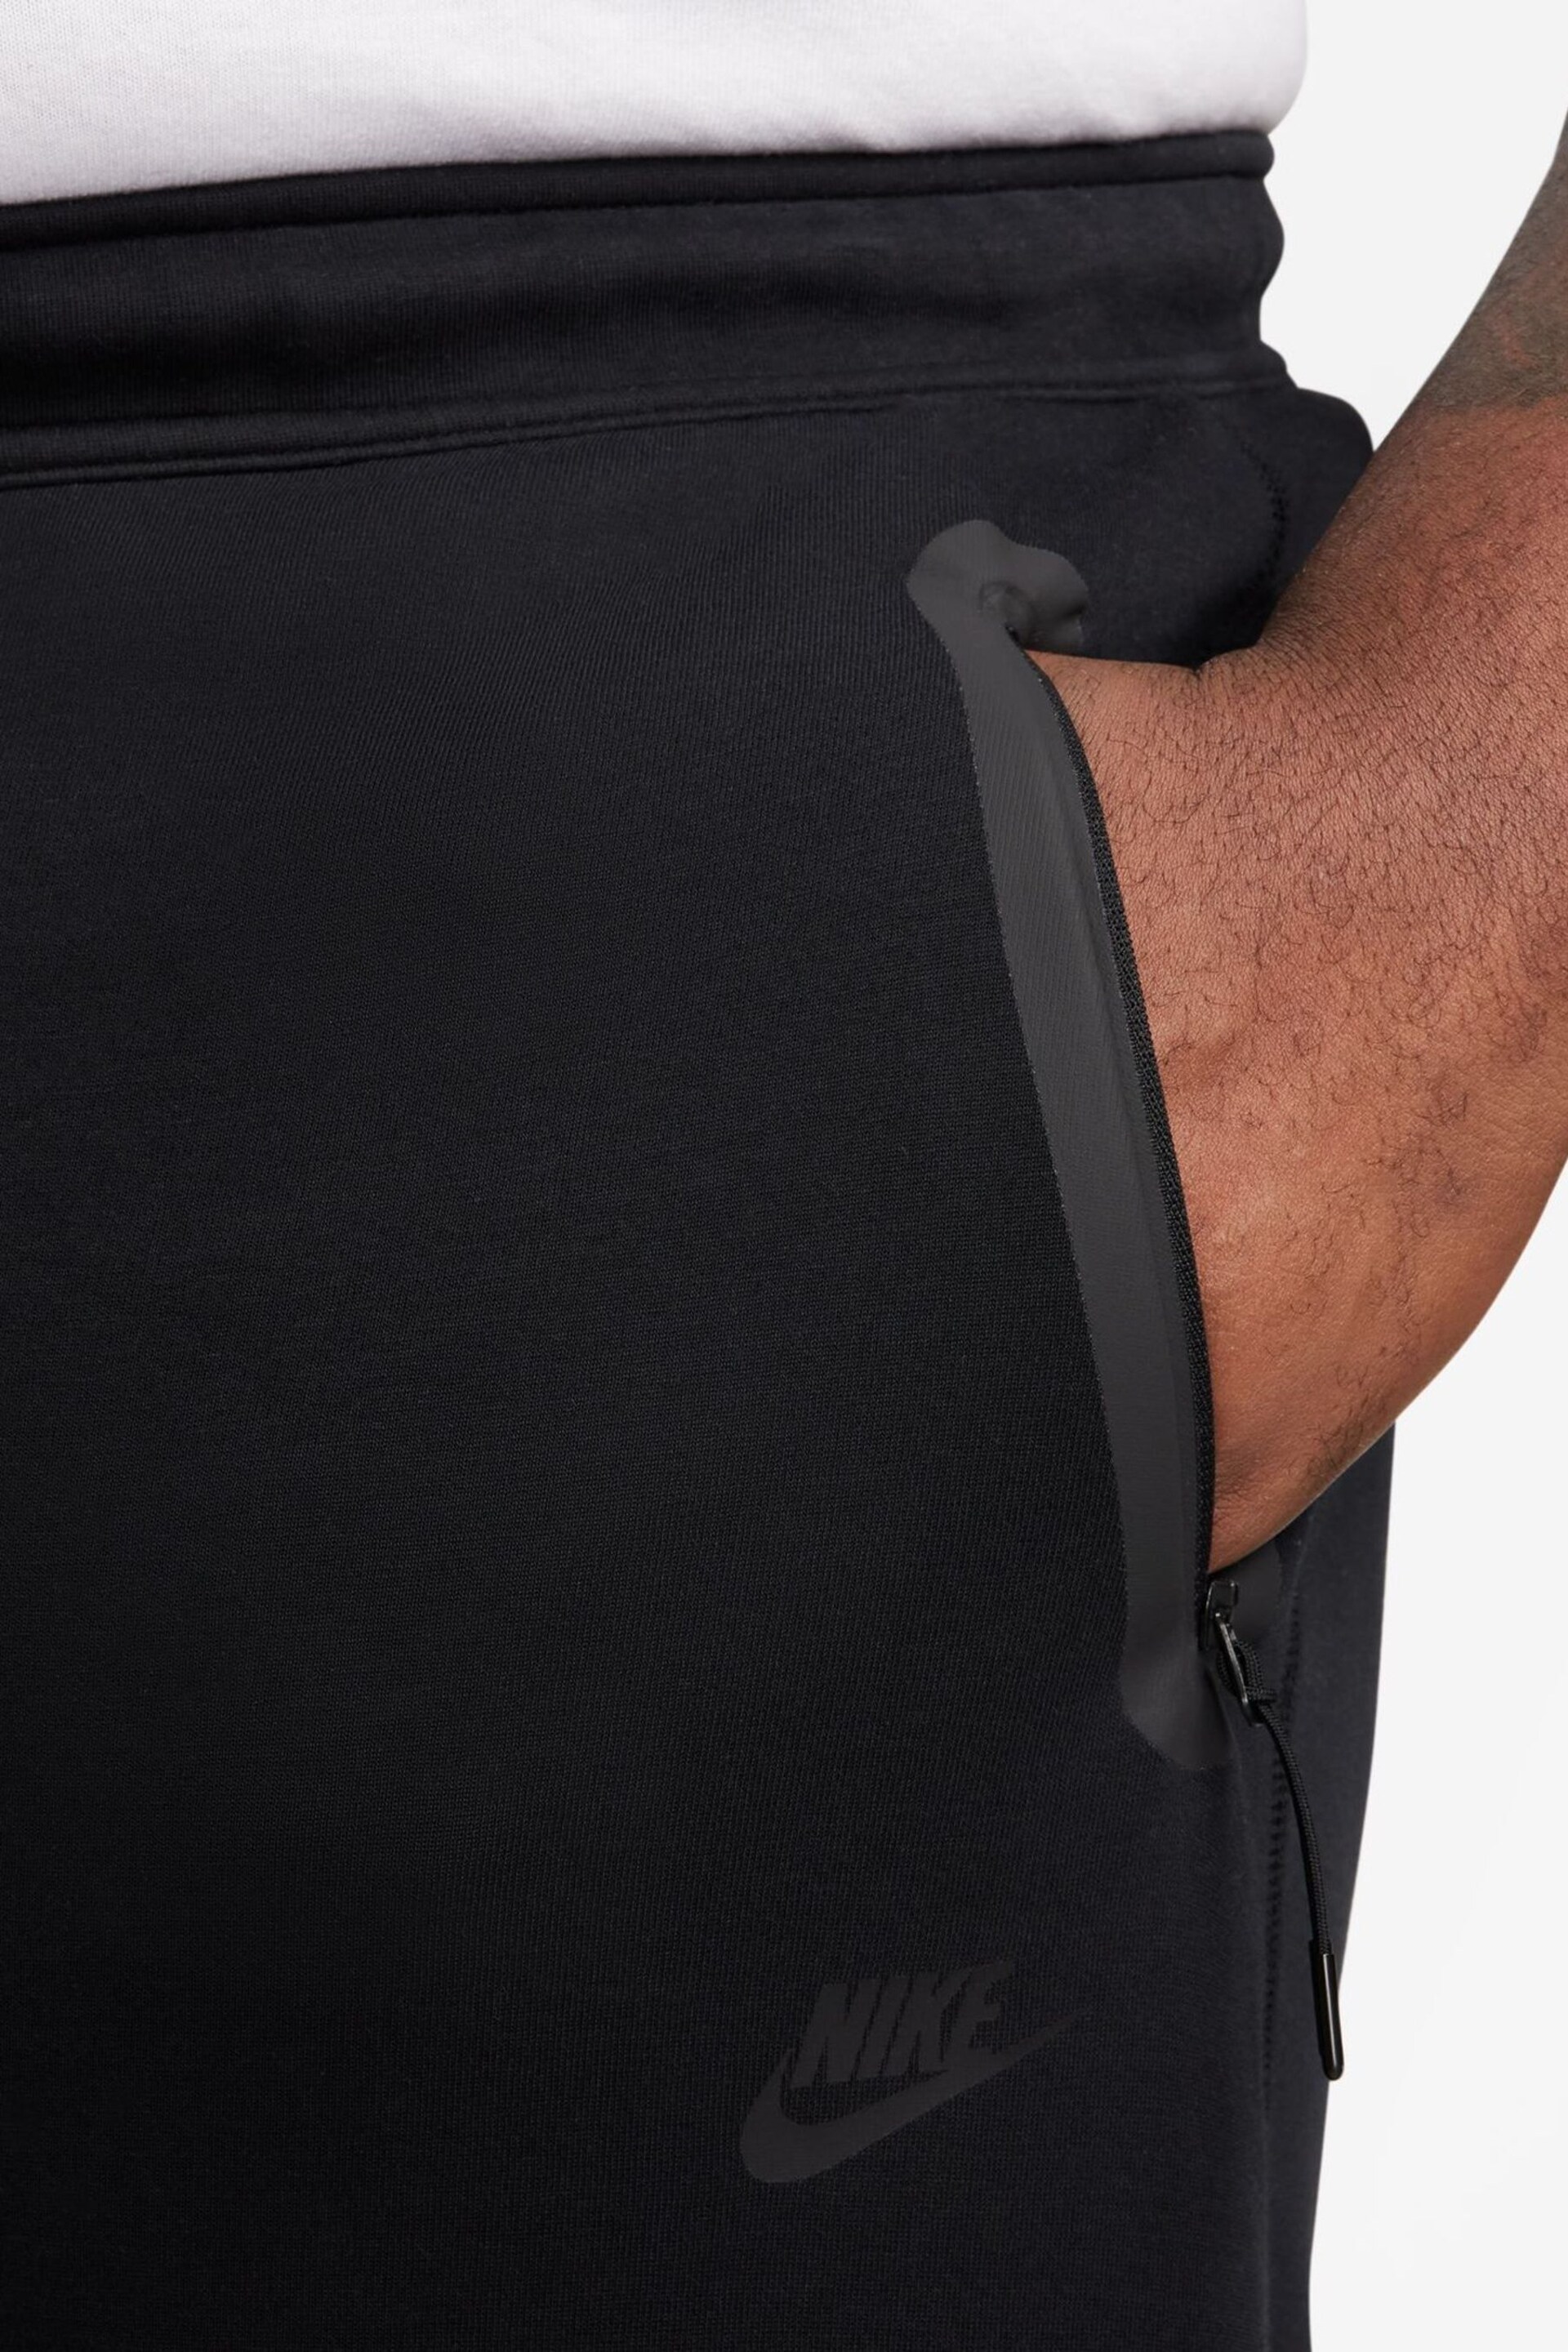 Nike Black Tech Fleece Open Hem Joggers - Image 9 of 14